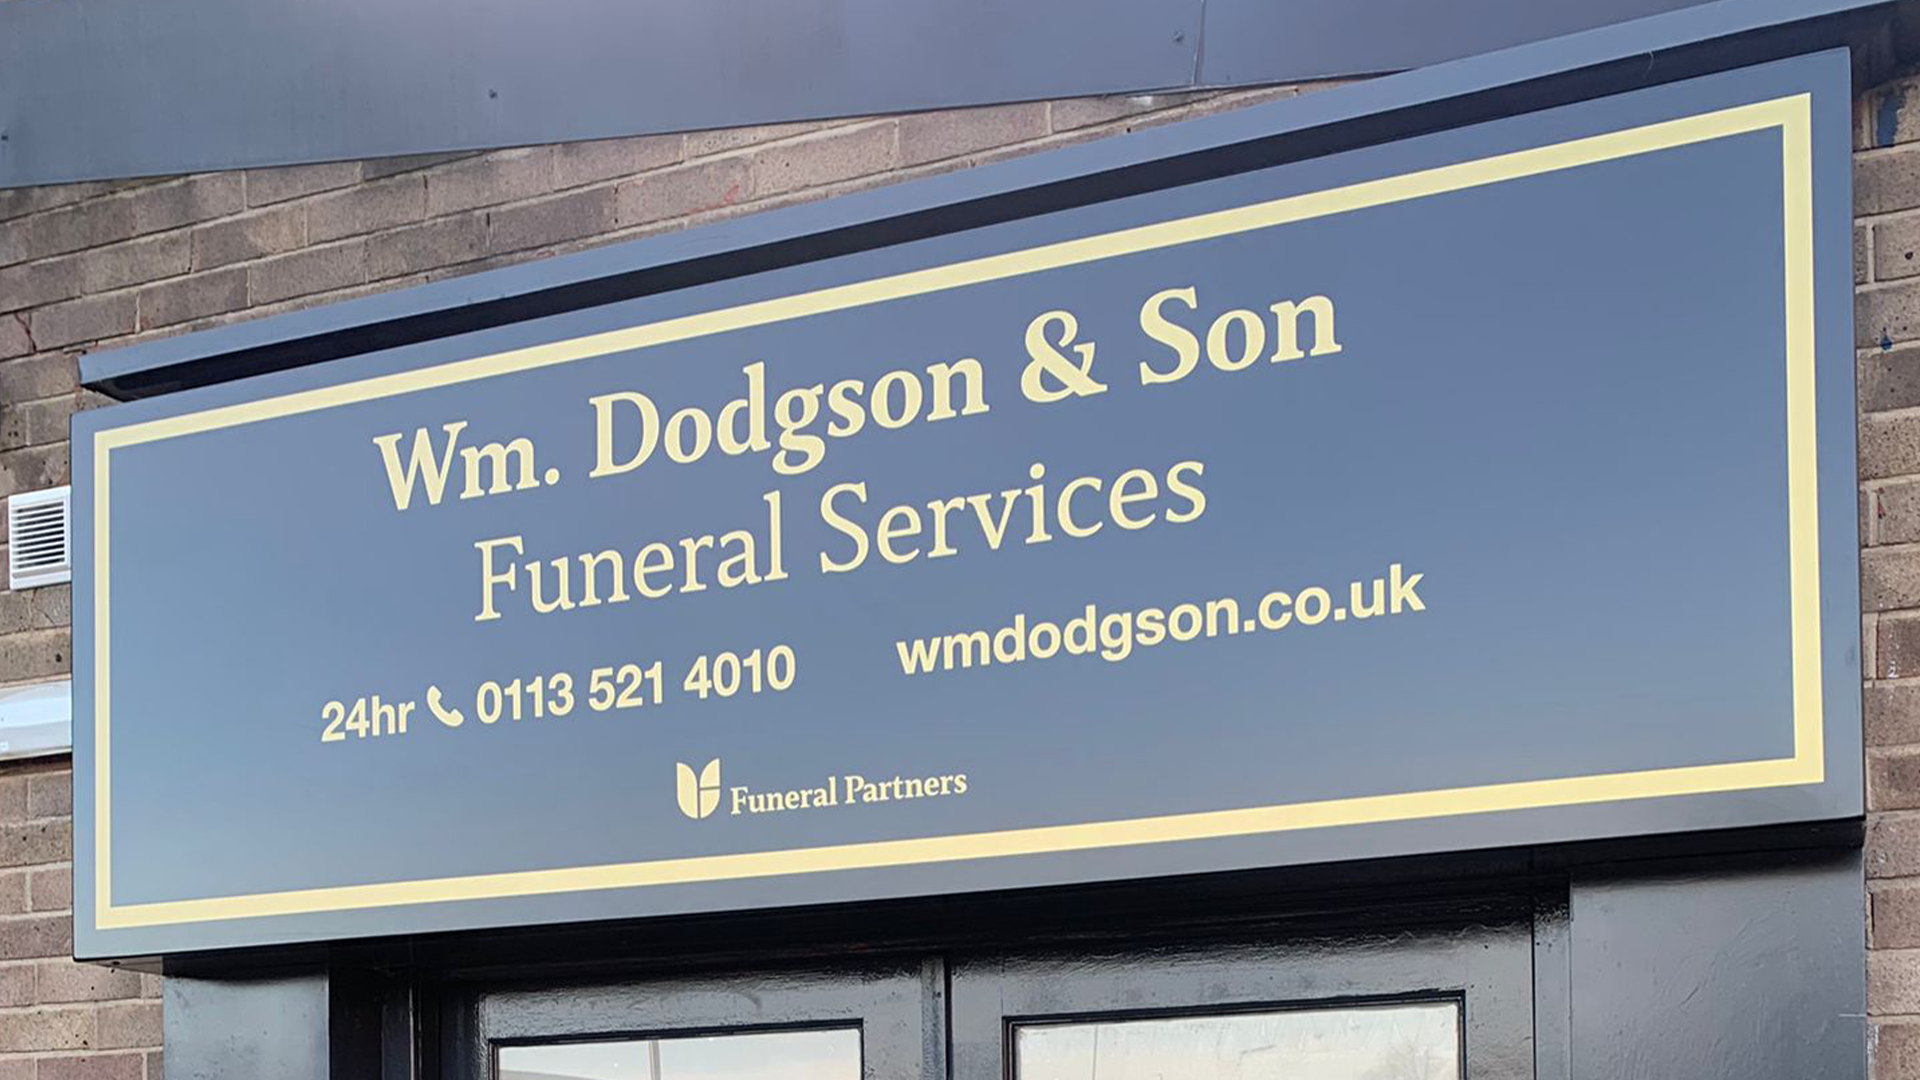 Images Wm. Dodgson & Son Funeral Services